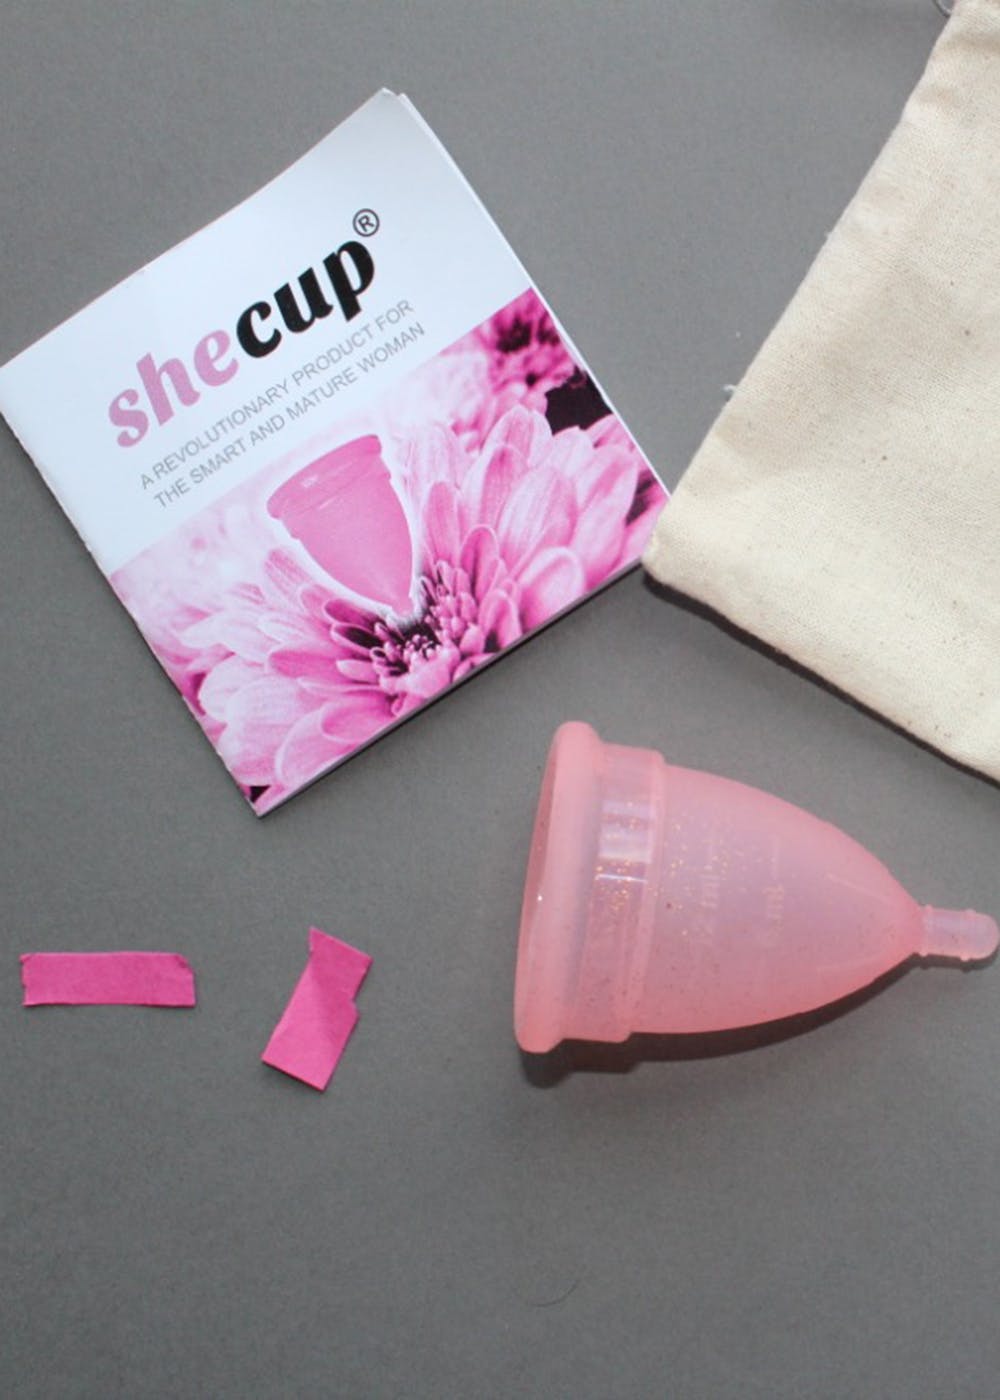 Shecup L (Longer Stem) Menstrual Cup at Rs 1185/unit, मेन्स्ट्रूअल कप in  Mumbai